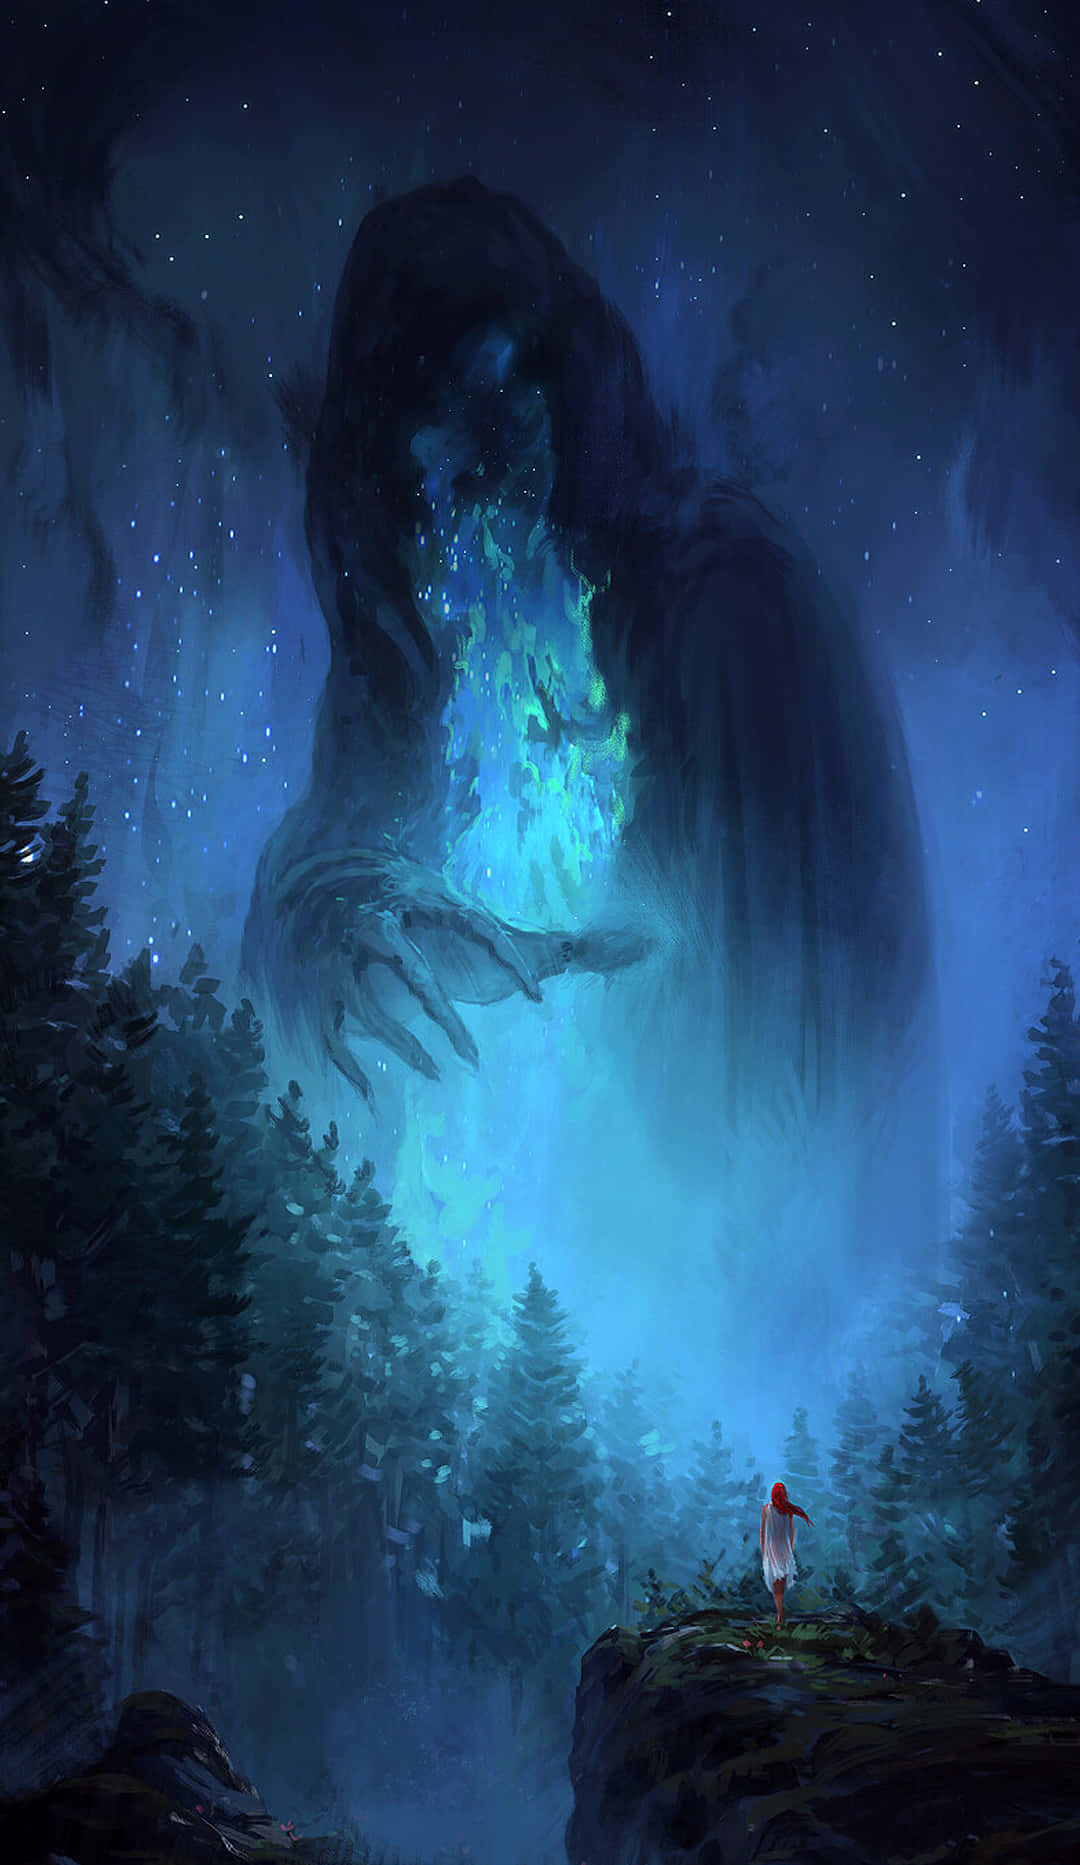 Unhombre Está Parado En El Bosque Con Un Monstruo Gigante En El Cielo. Fondo de pantalla